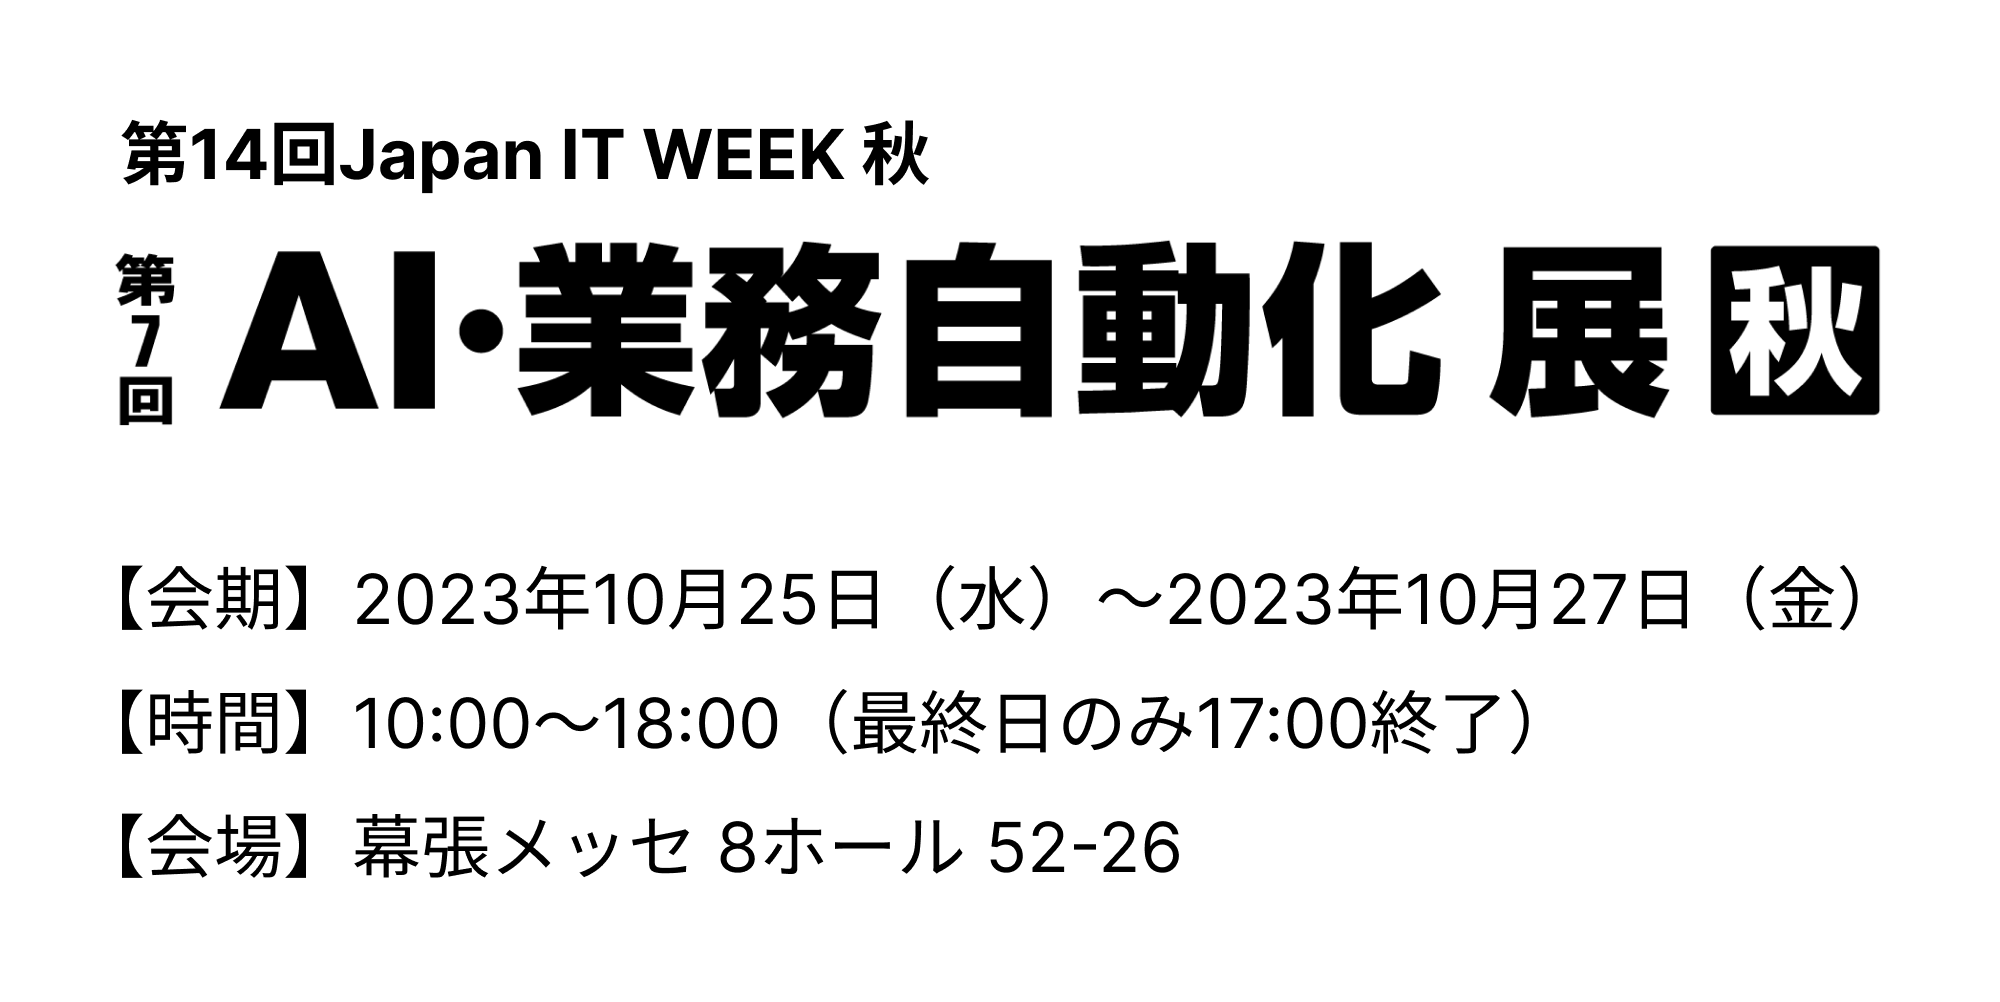 「第14回Japan IT Week 秋 第7回AI・業務自動化展」出展のお知らせ